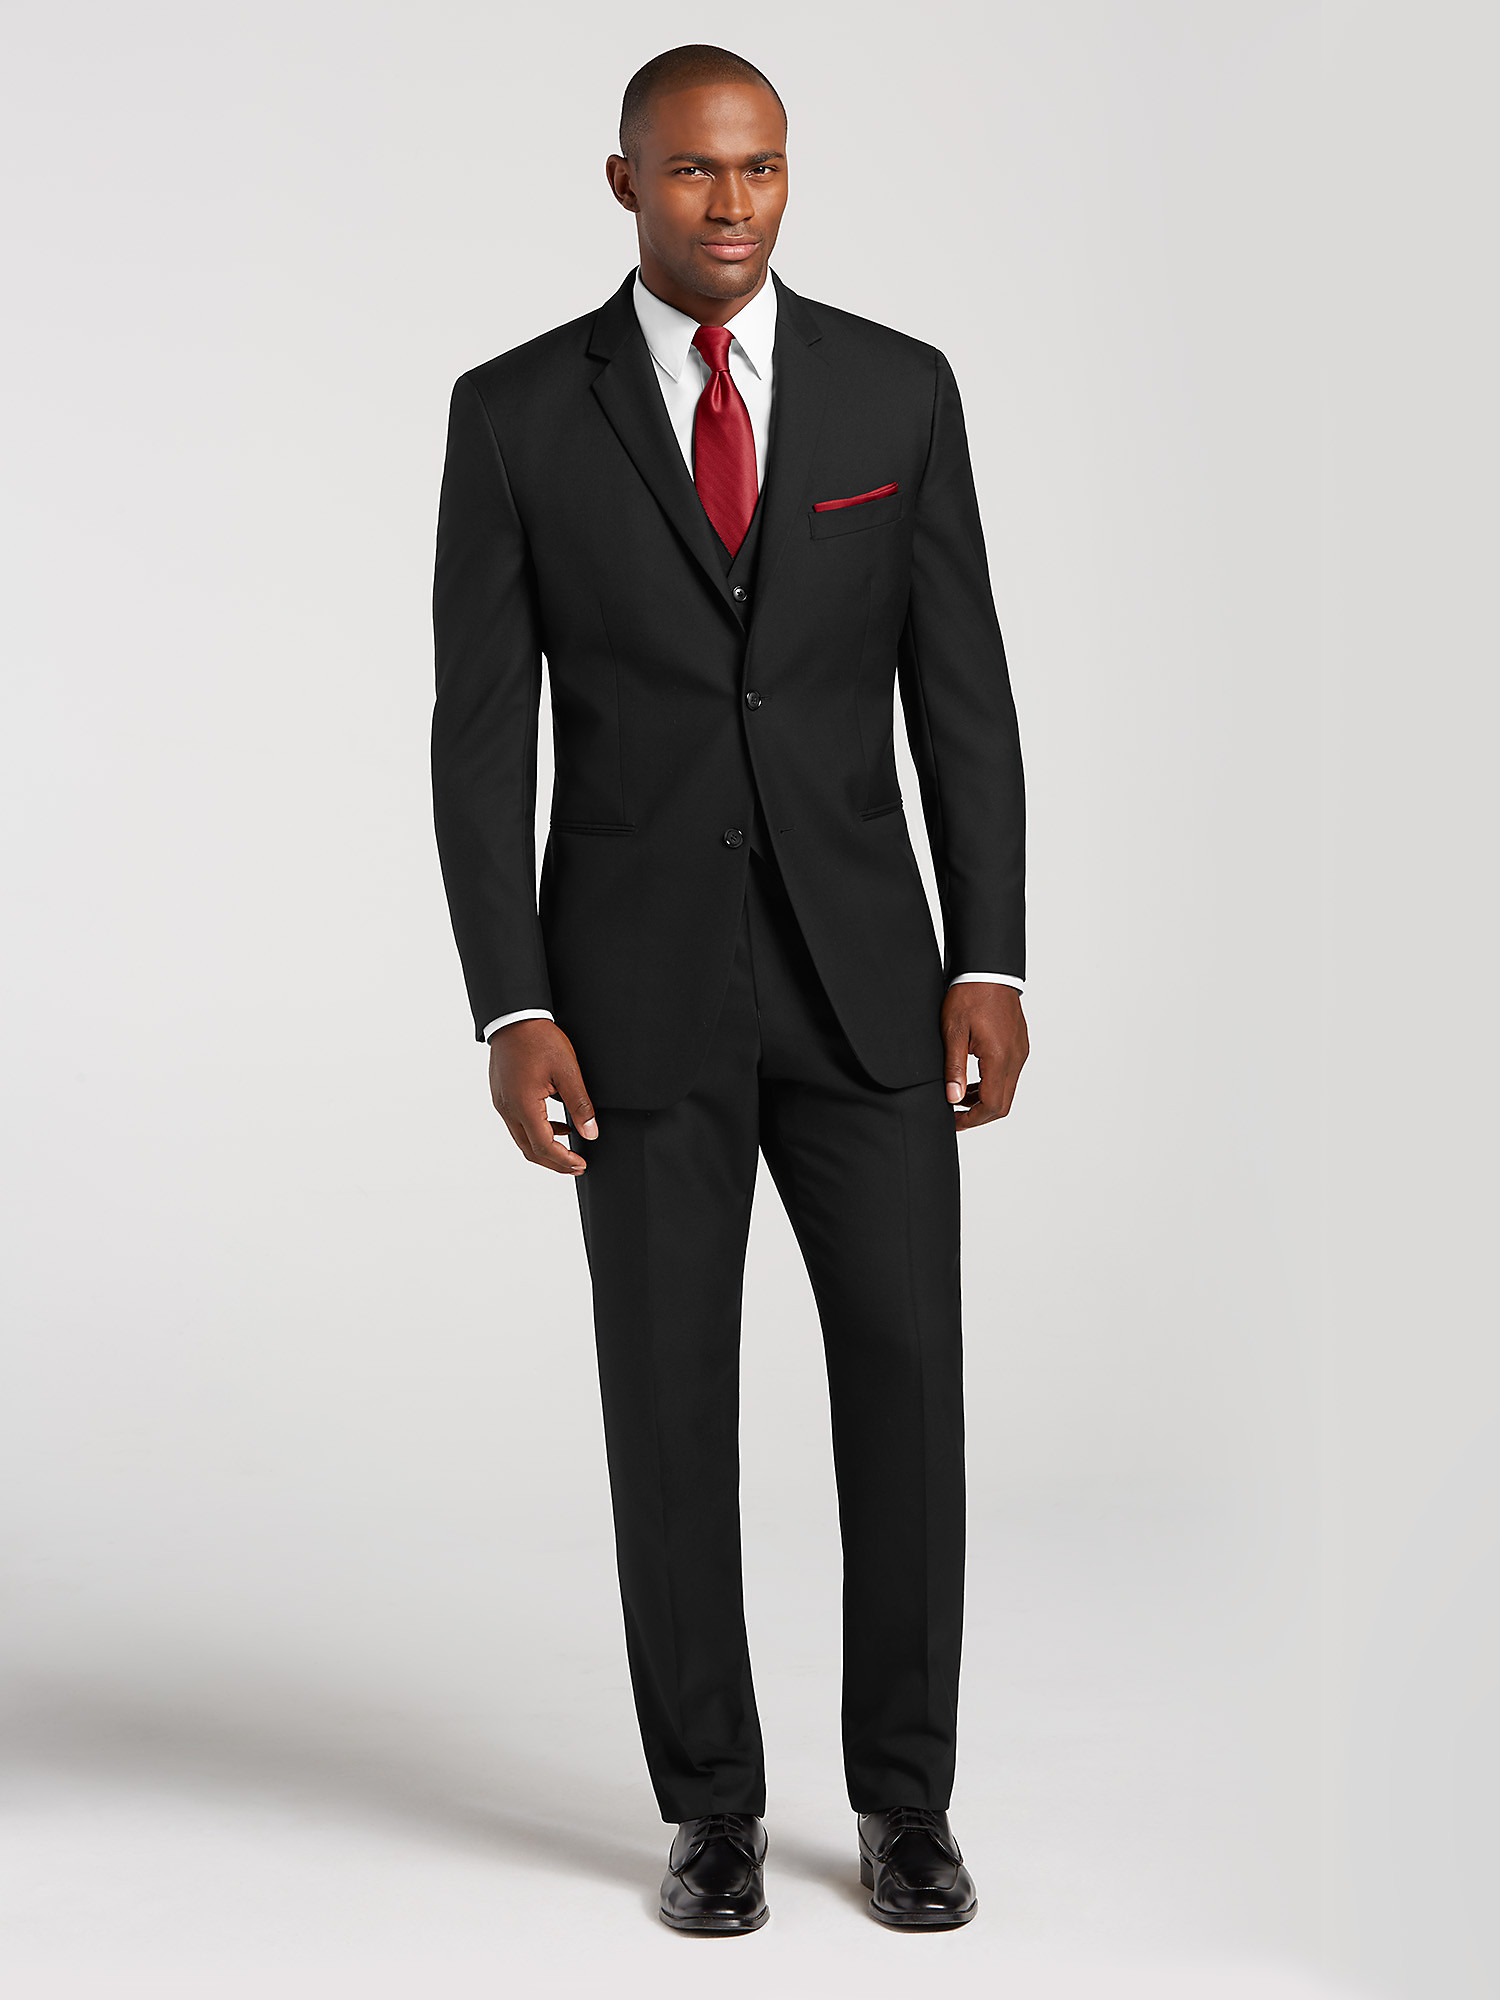 Vintage Black Two Button Suit by Pronto Uomo | Suit Rental | Men's ...